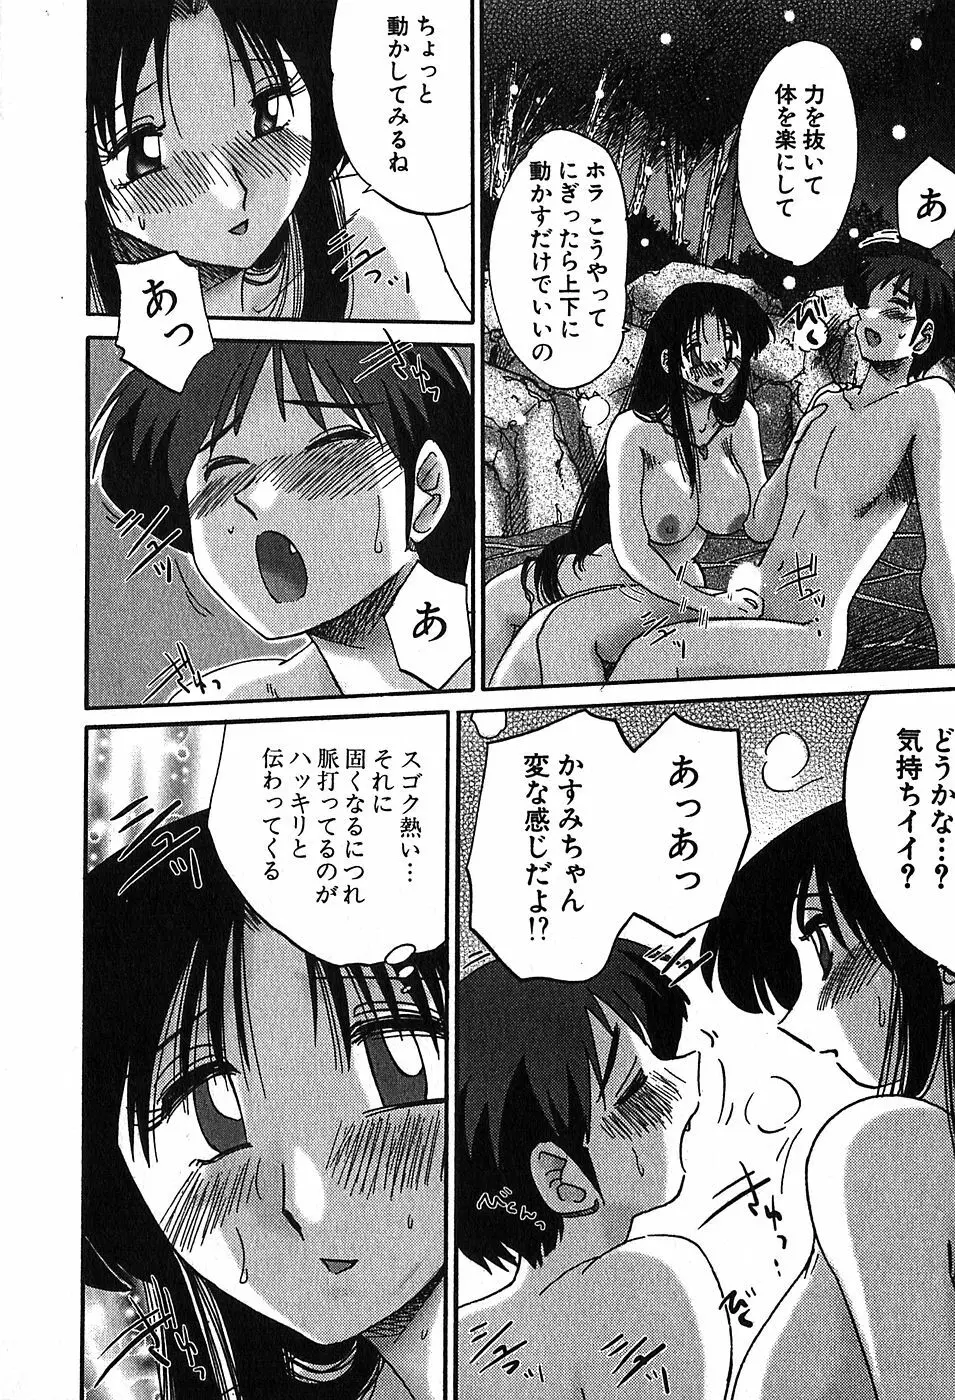 Kasumi_No_Mori Vol.2 63ページ